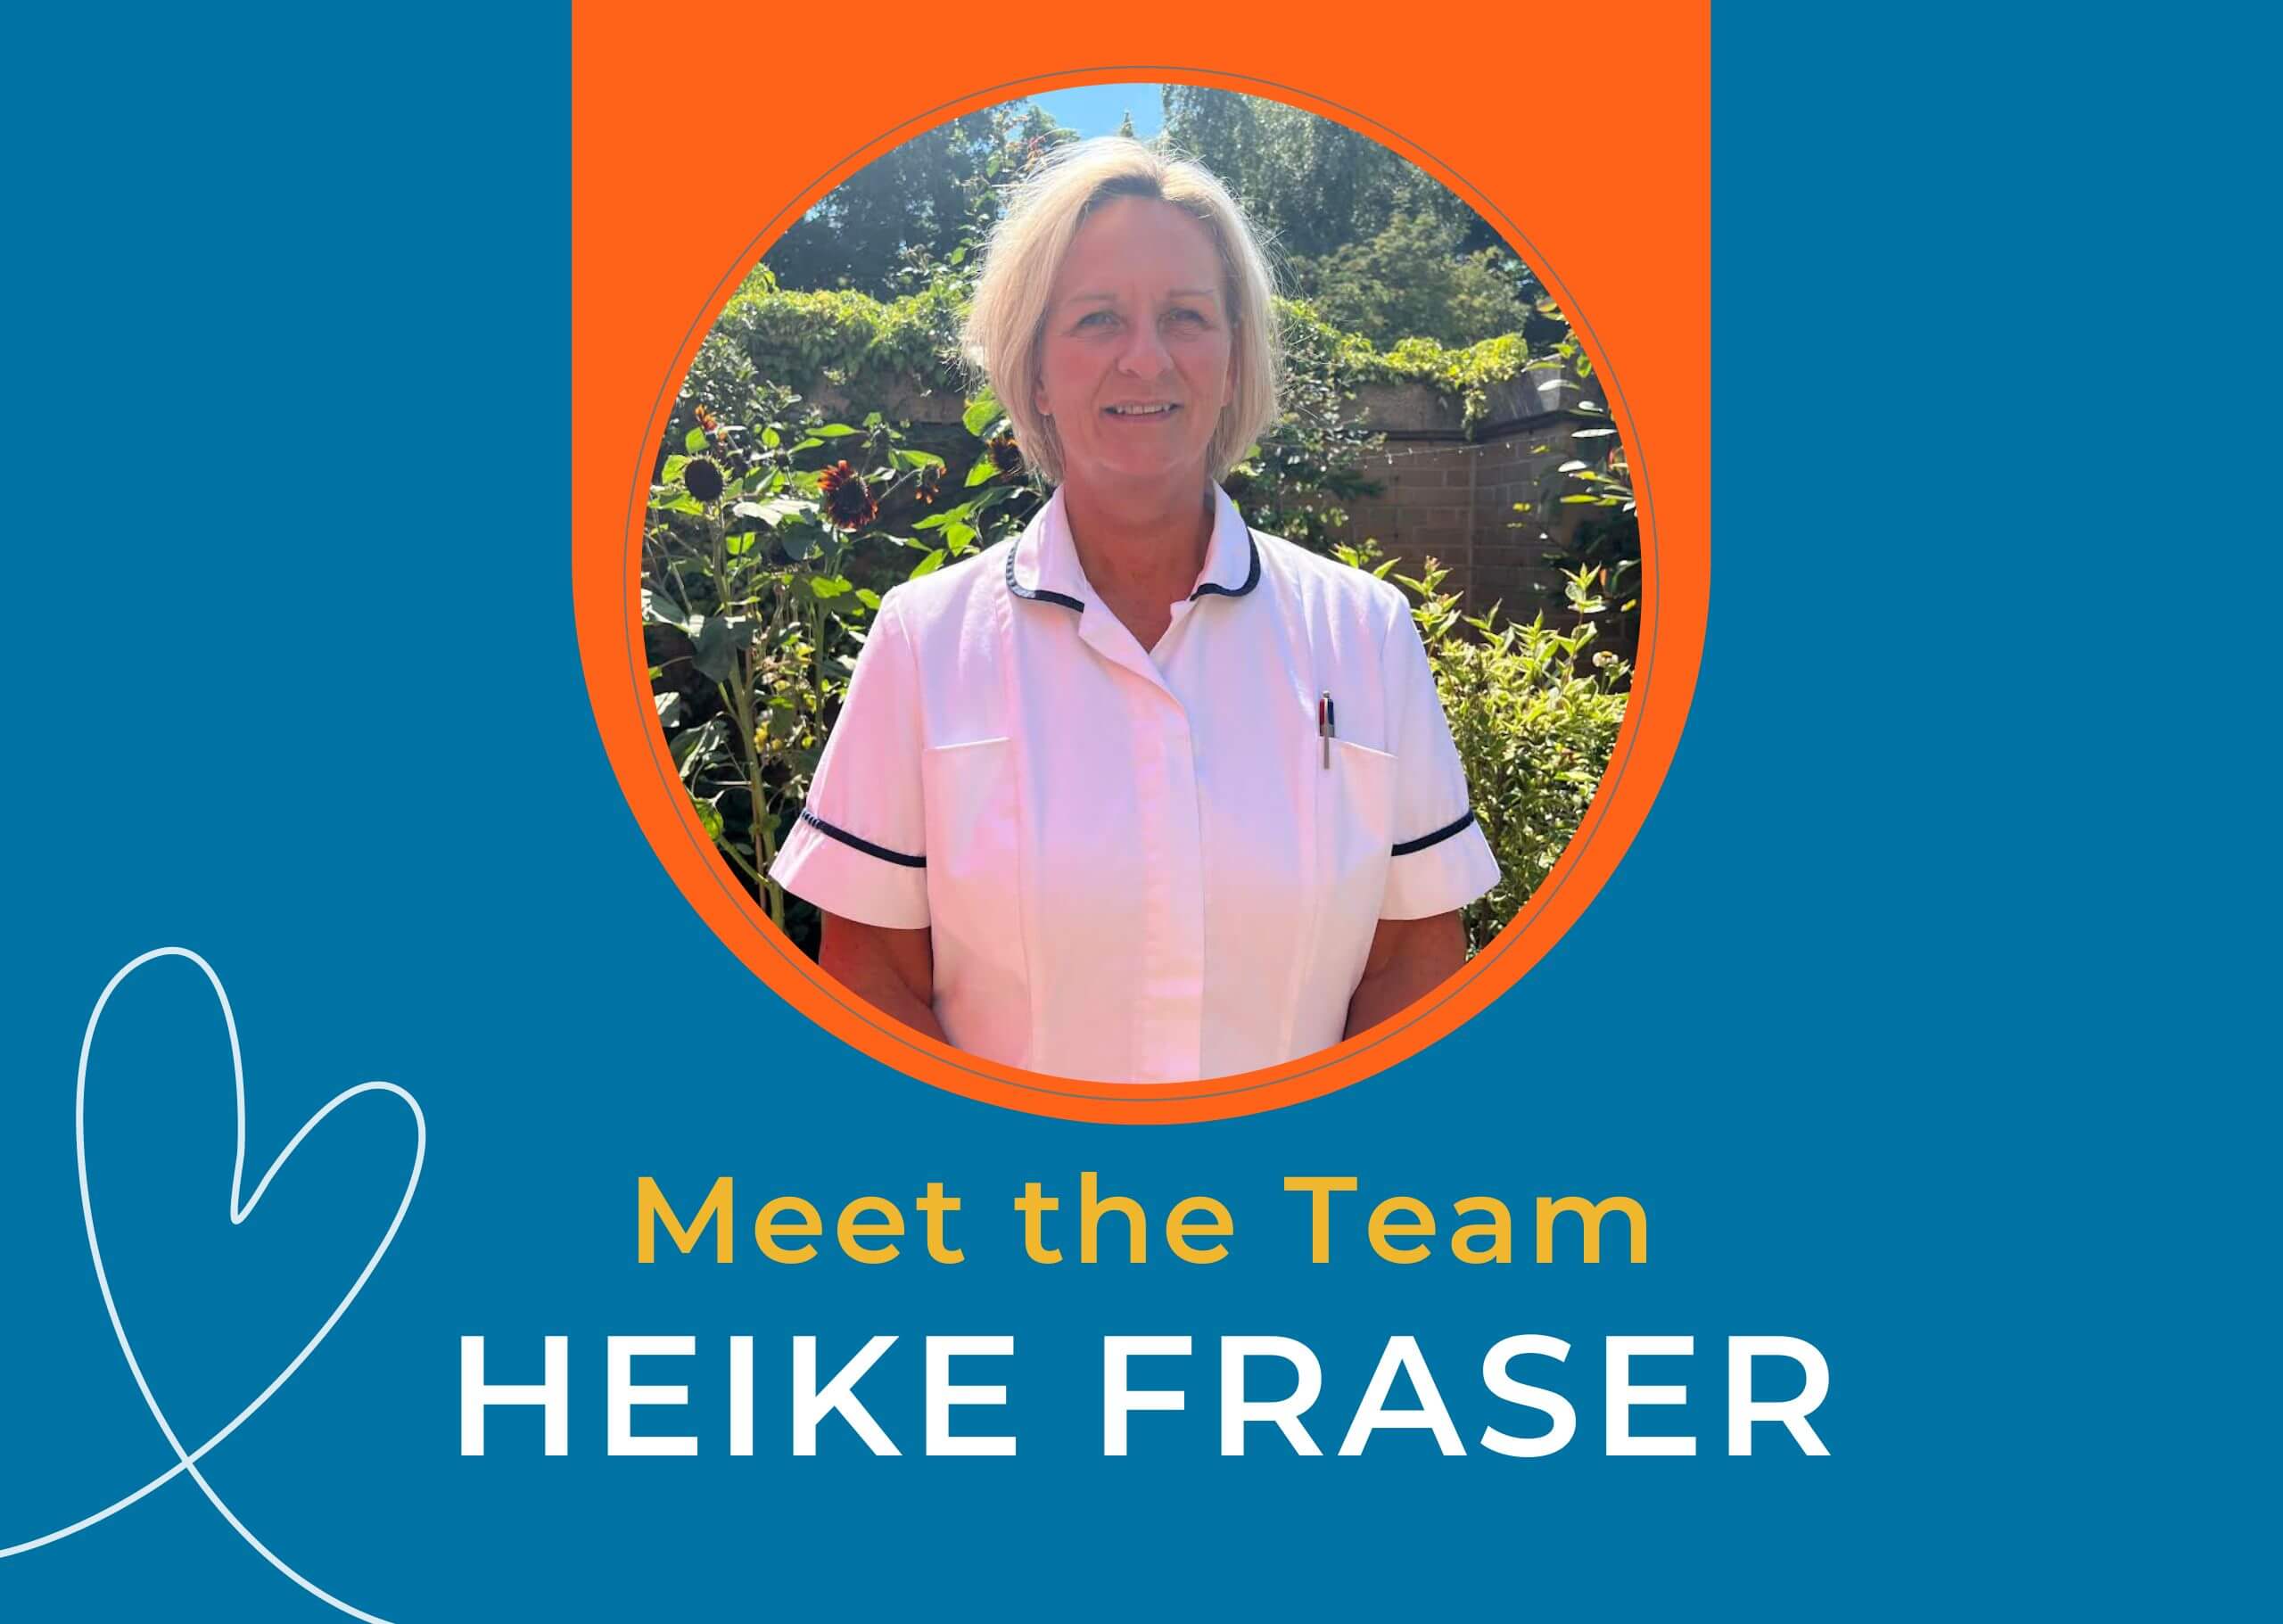 Heike Fraser - Meet the Team